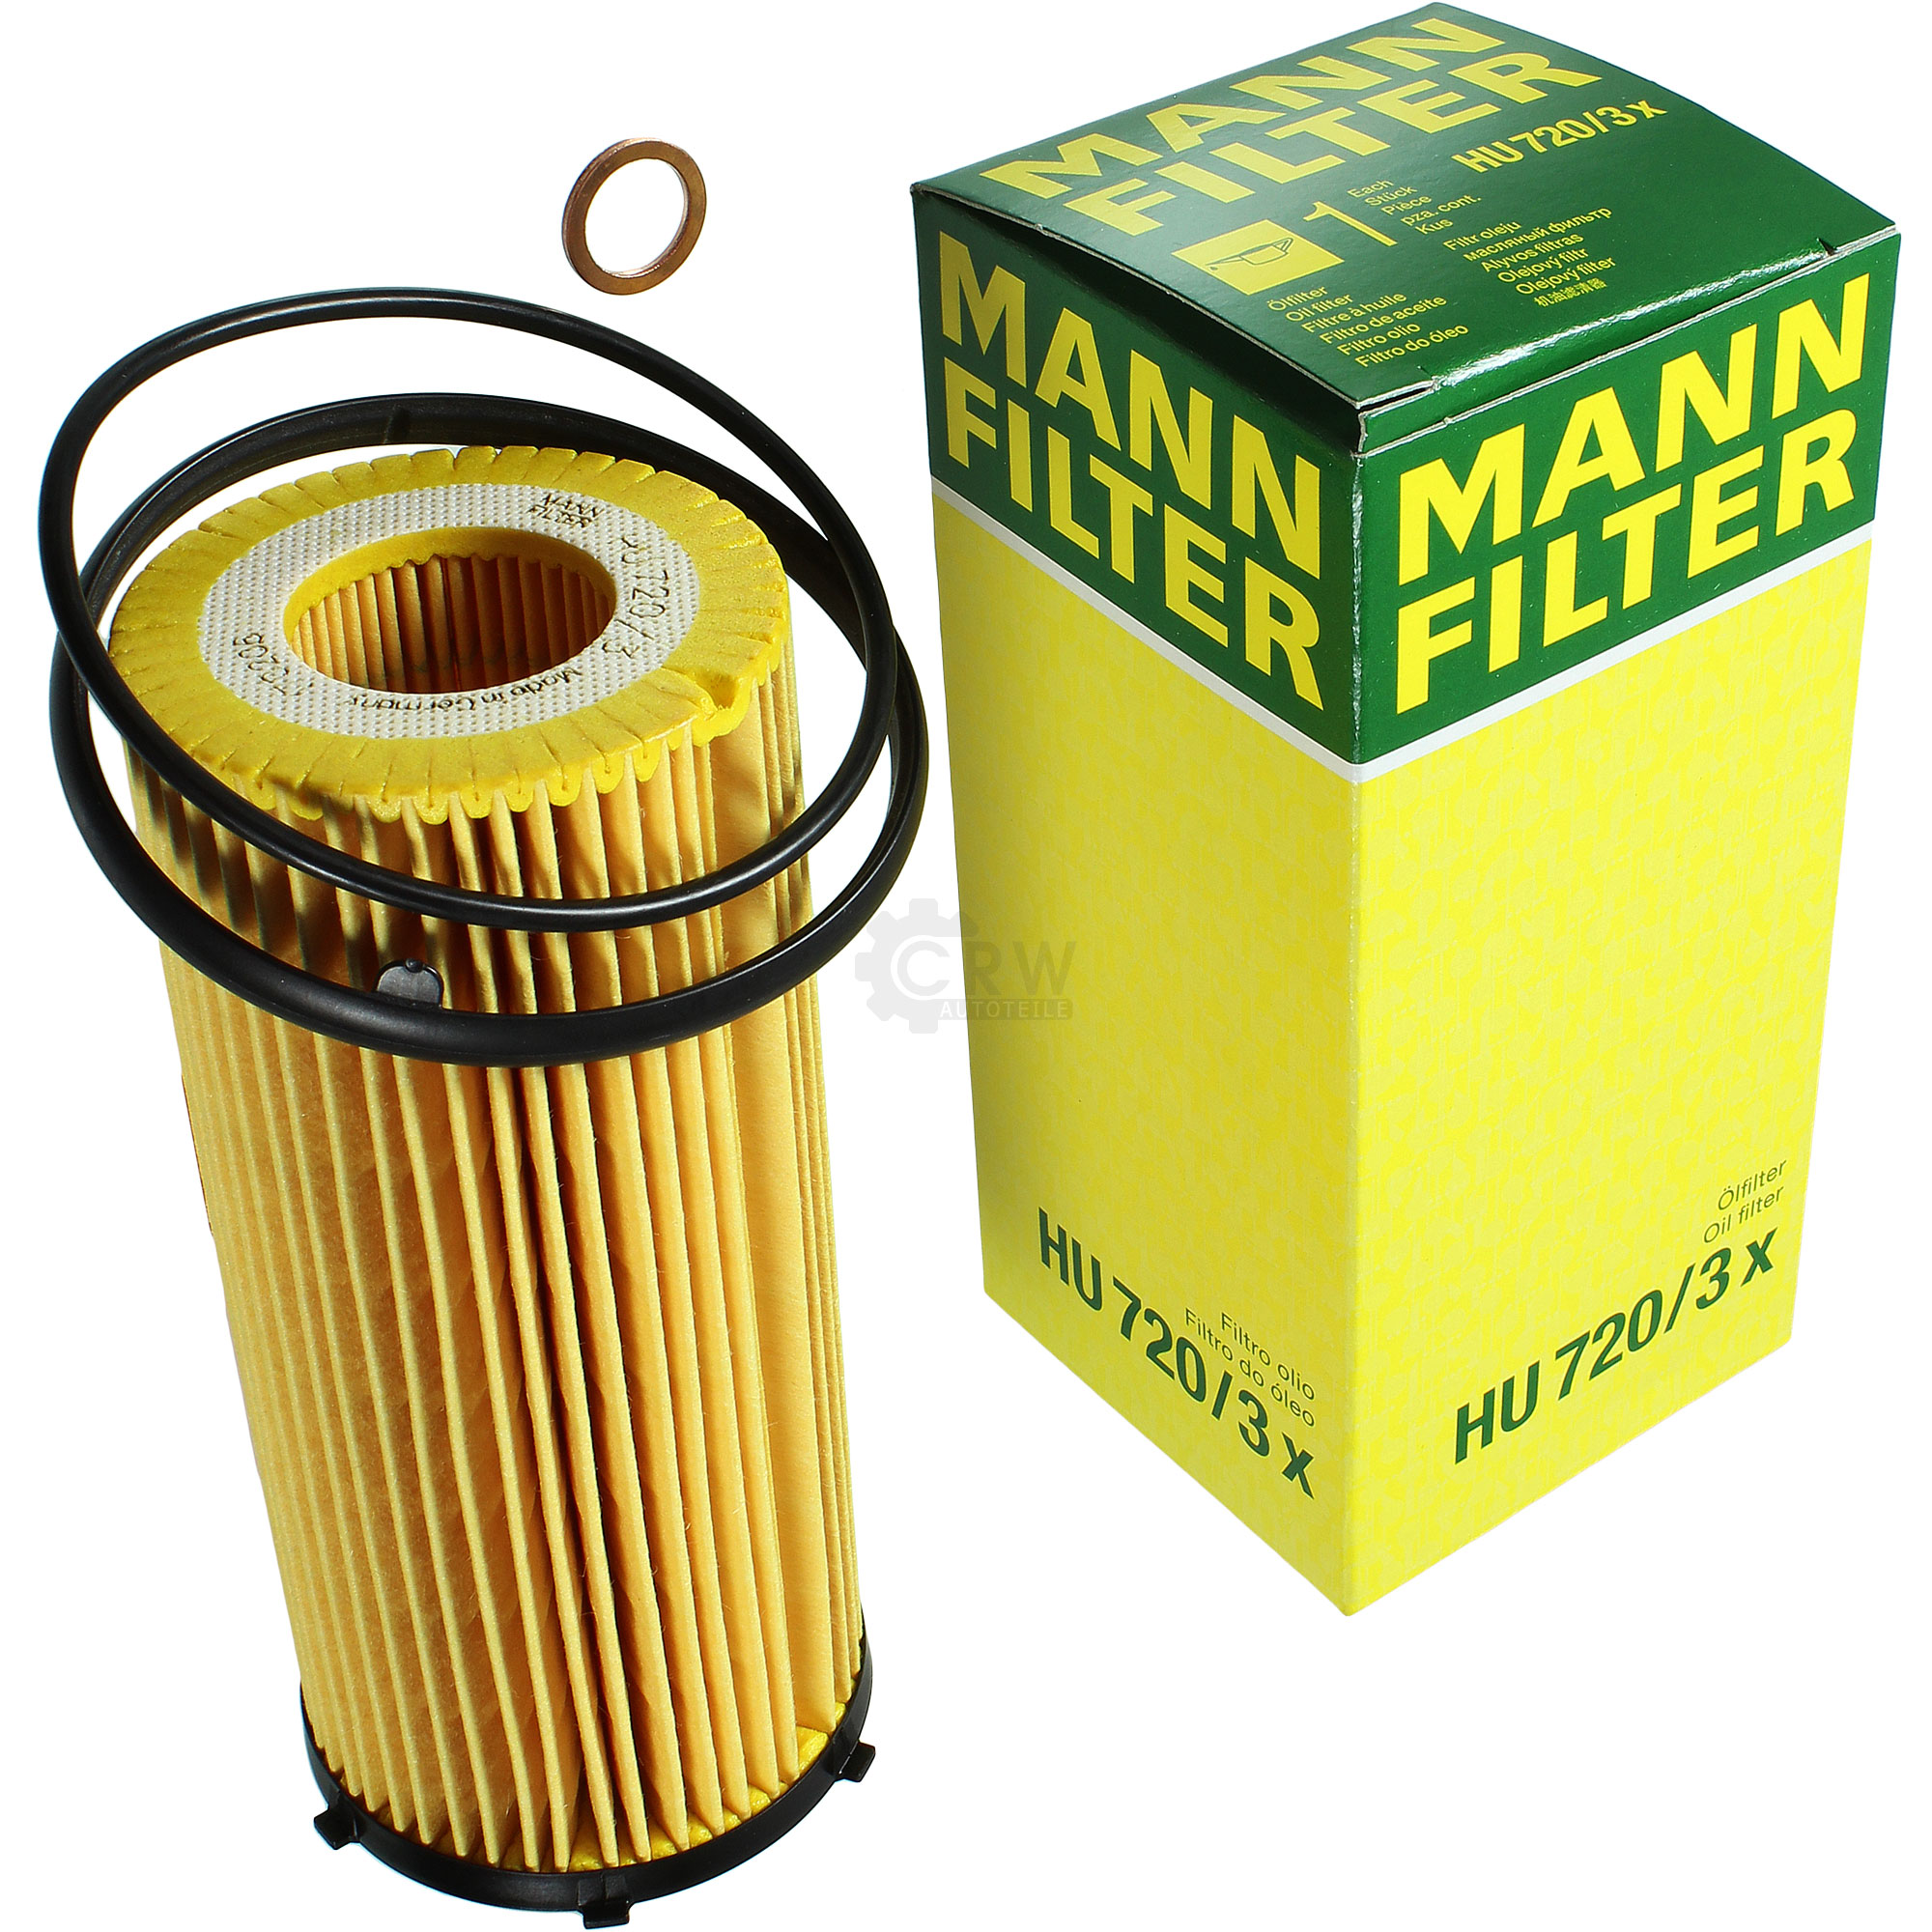 MANN-FILTER Ölfilter HU 720/3 x Oil Filter